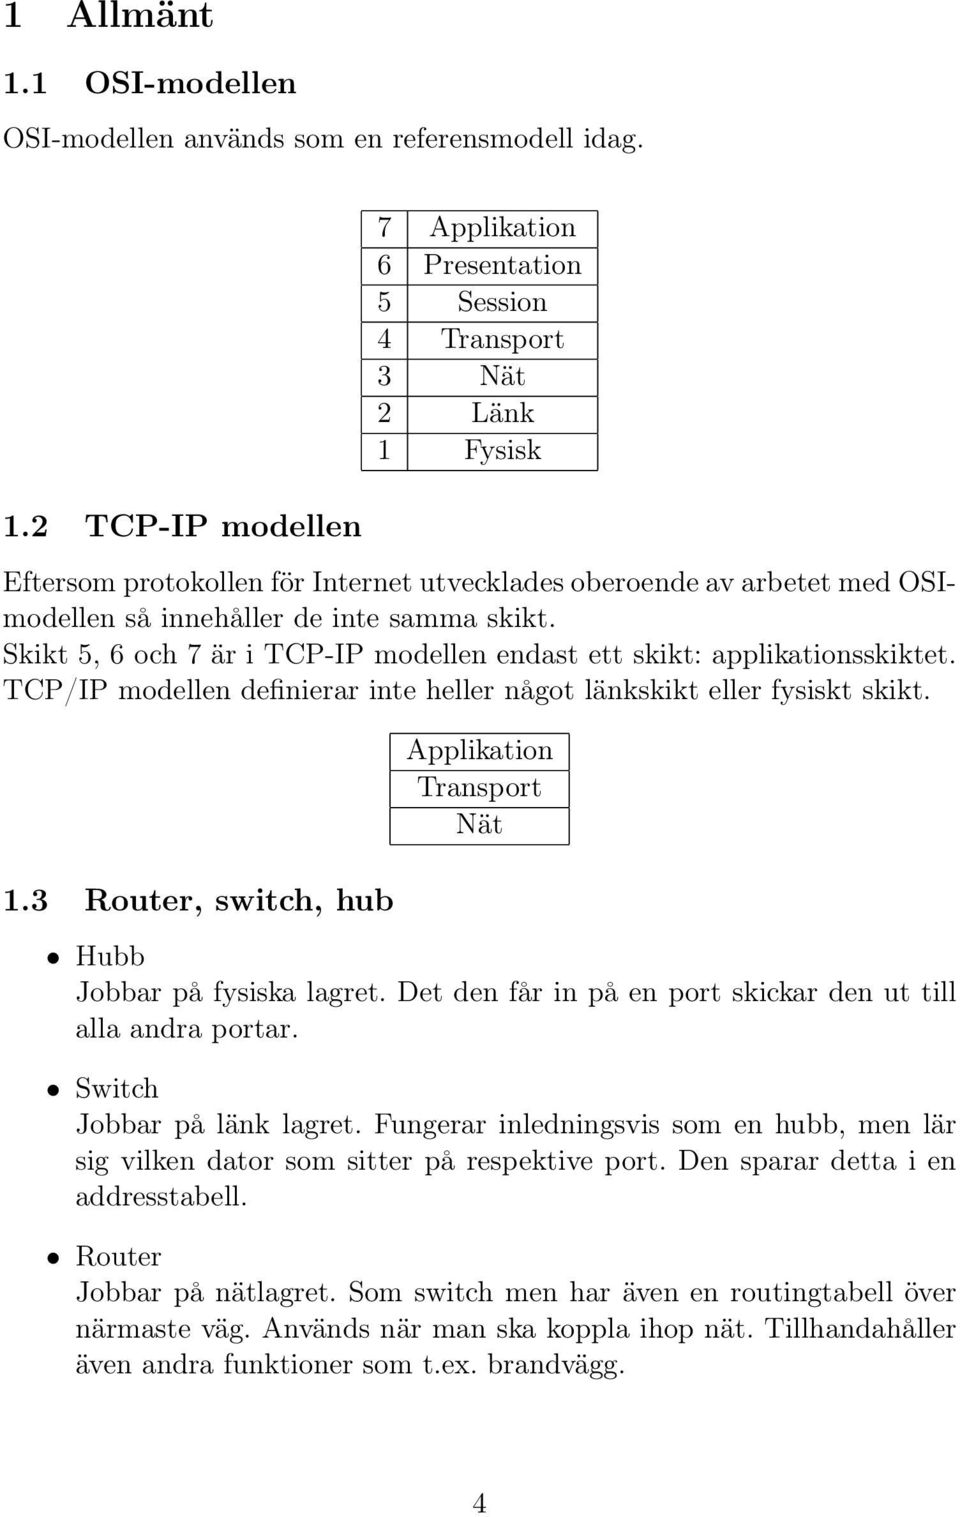 2 TCP-IP modellen 7 Applikation 6 Presentation 5 Session 4 Transport 3 Nät 2 Länk 1 Fysisk Eftersom protokollen för Internet utvecklades oberoende av arbetet med OSImodellen så innehåller de inte